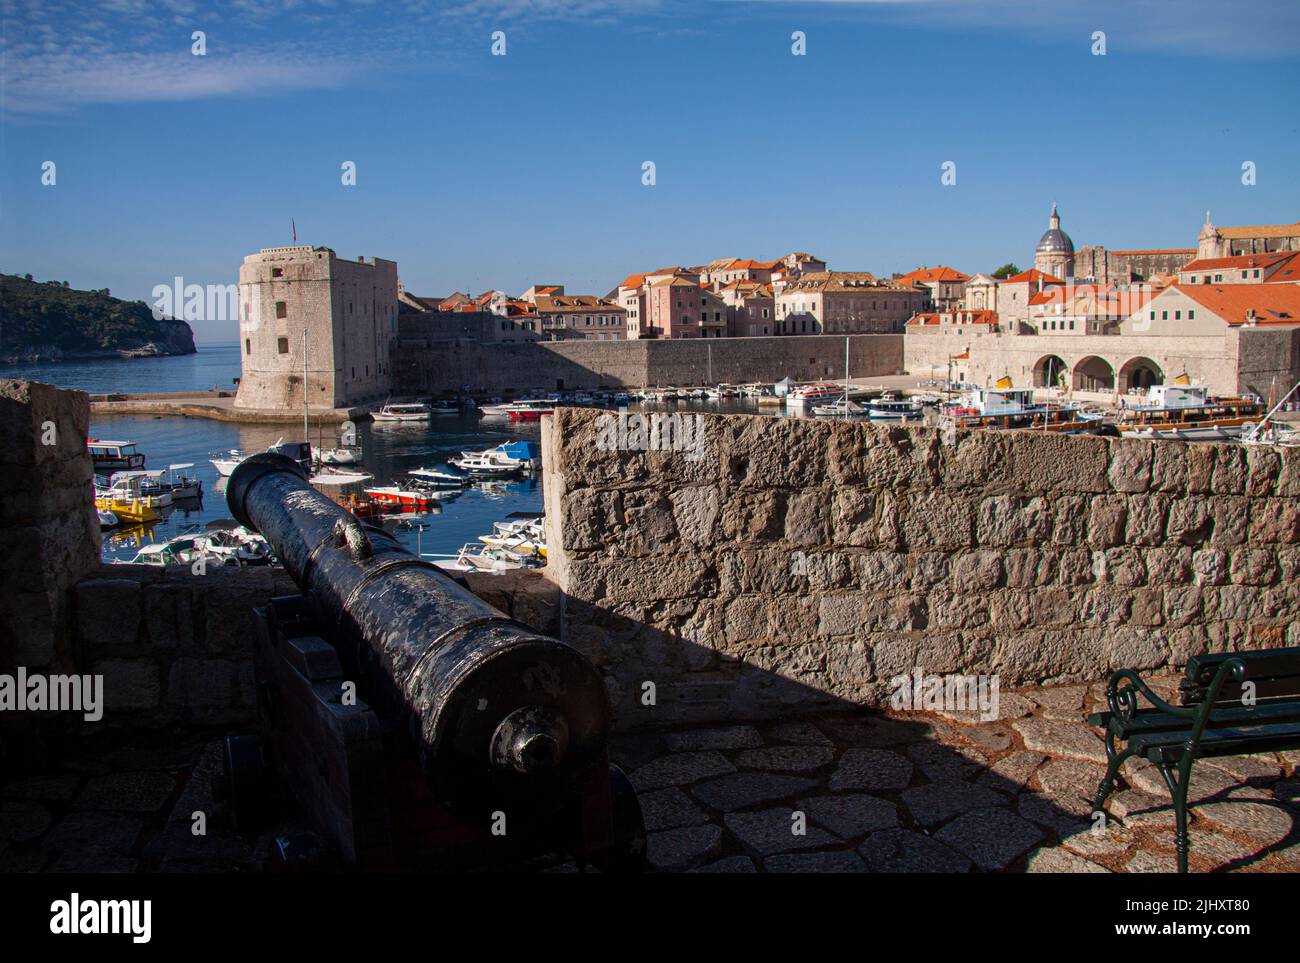 Dubrovnik, Croatie. Vue sur la vieille ville et le port historique depuis le château avec stand de canon sur le mur de la ville. Fond bleu ciel. Banque D'Images